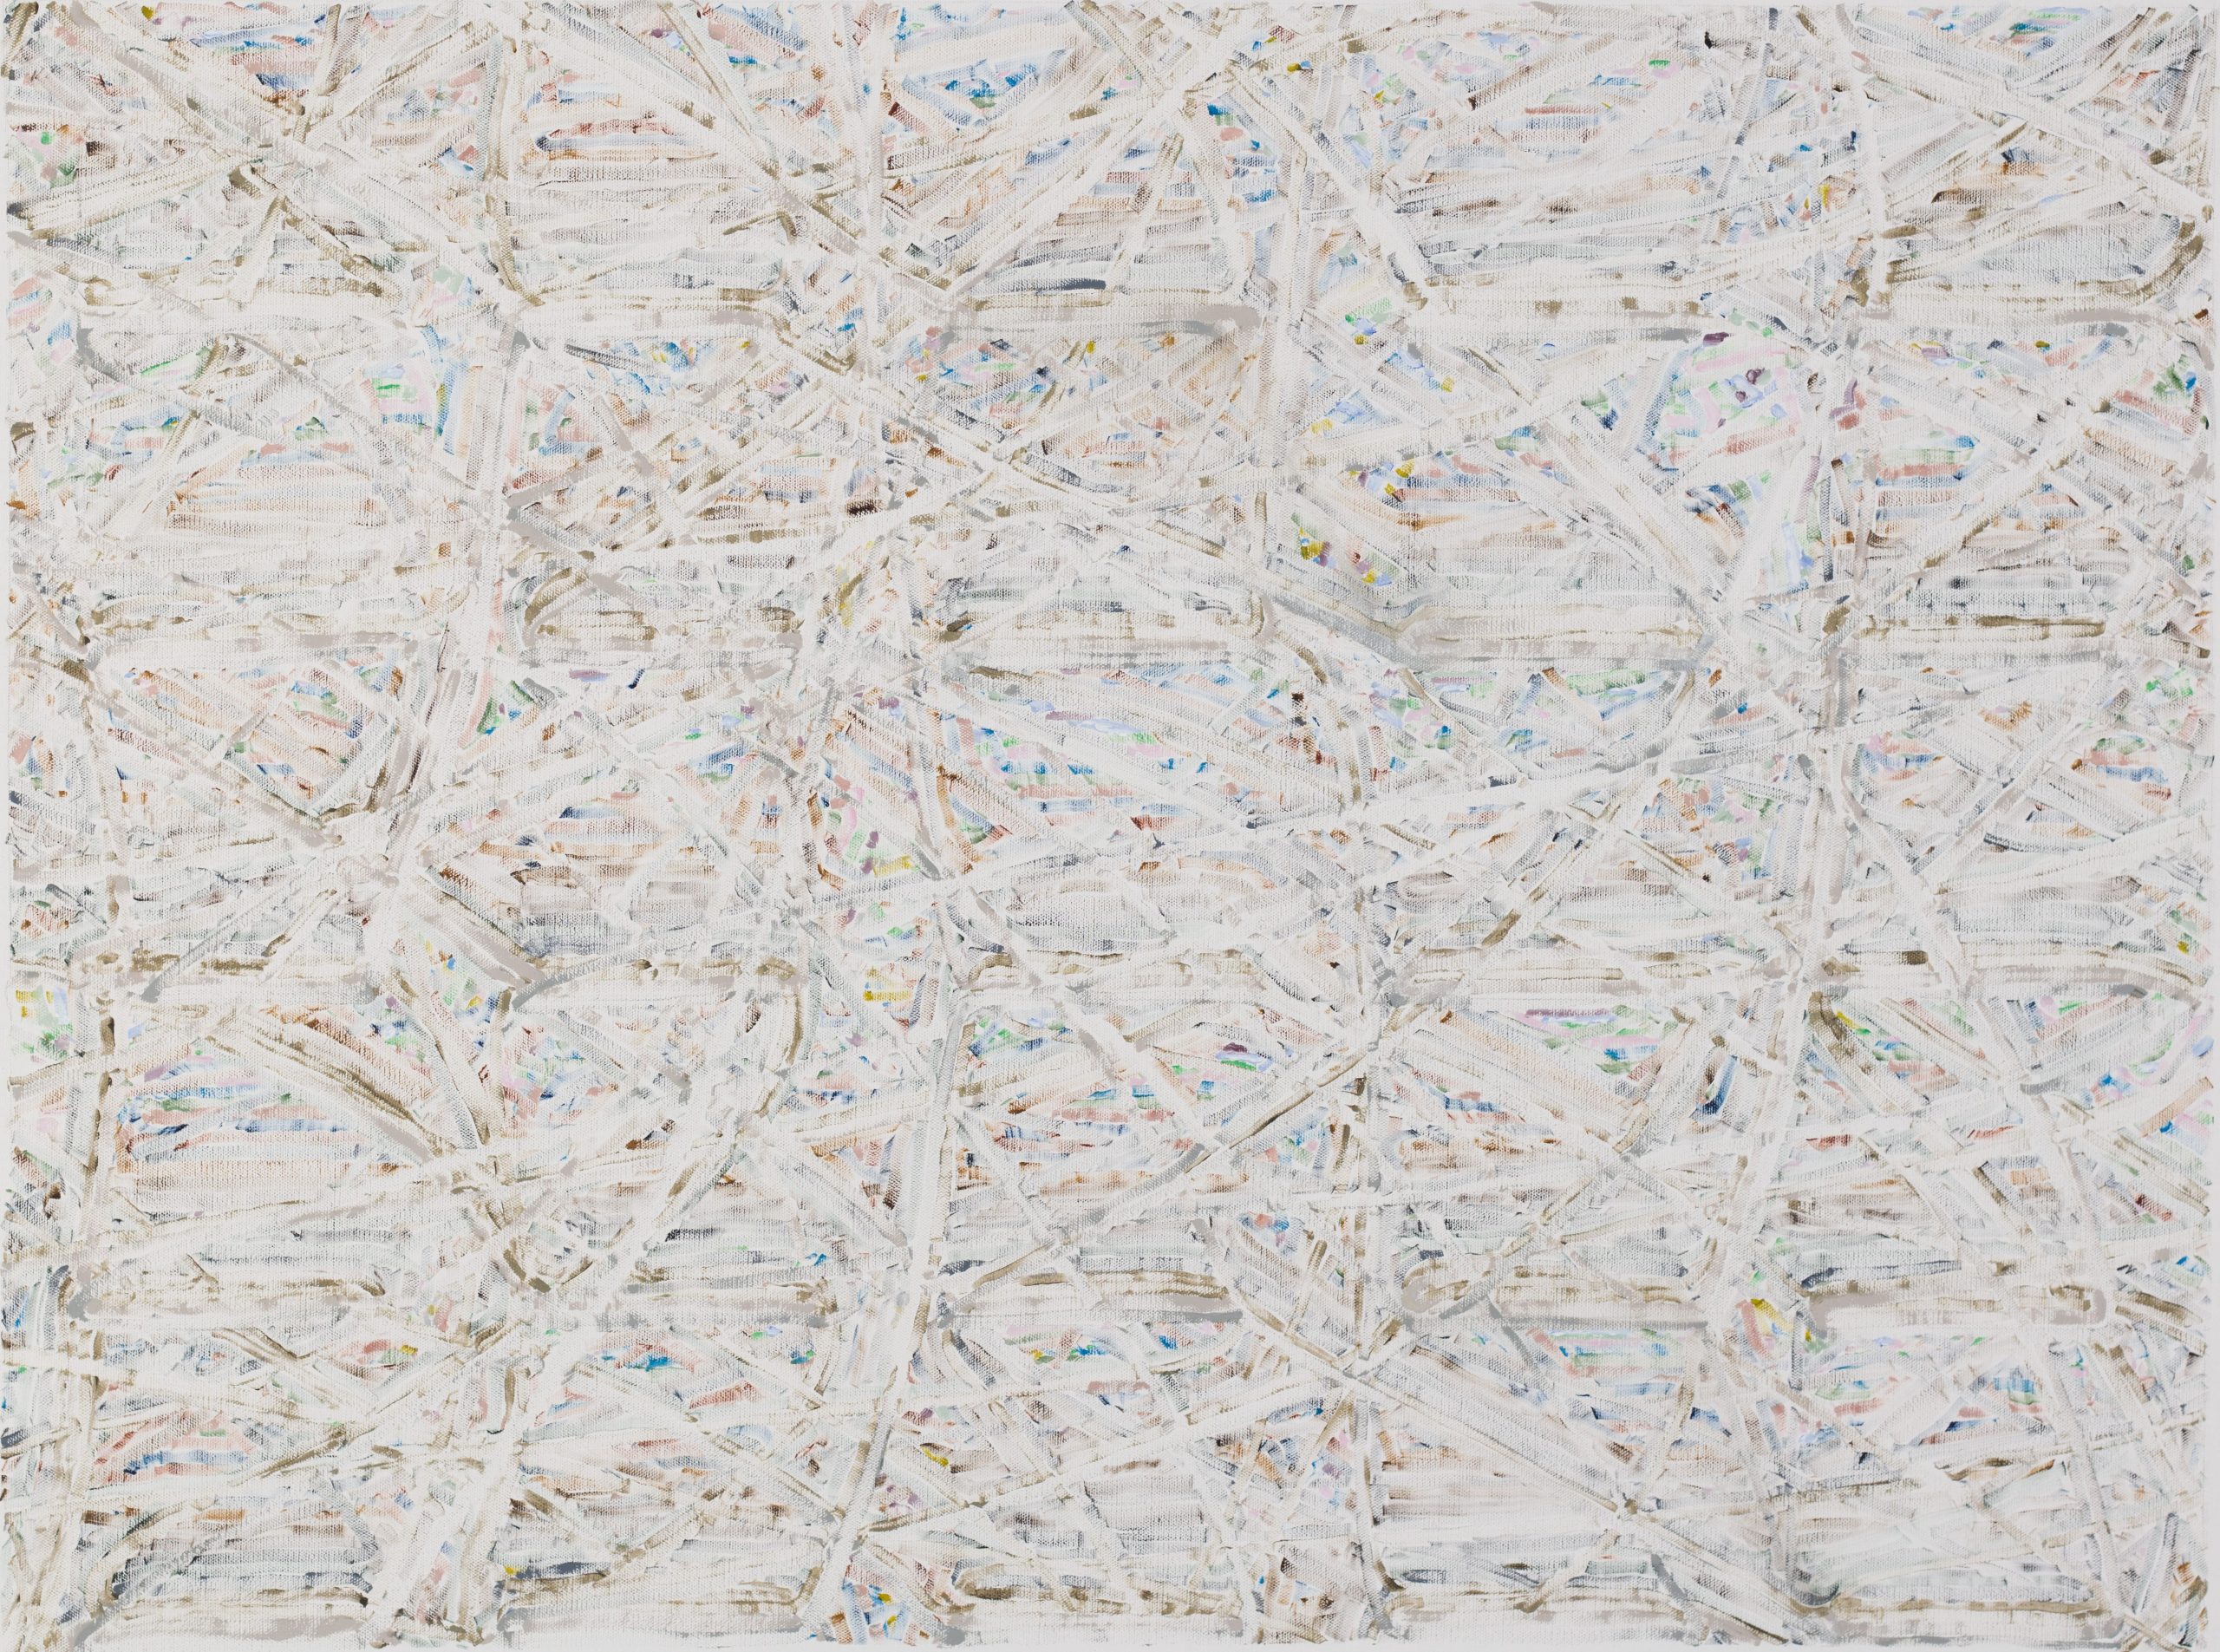 13_弗拉基米爾・可可利亞，《樹梢裡的微風》，2019，油彩、畫布，99.8 x 74.3 公分。私人收藏。藝術家與臺北市立美術館提供。